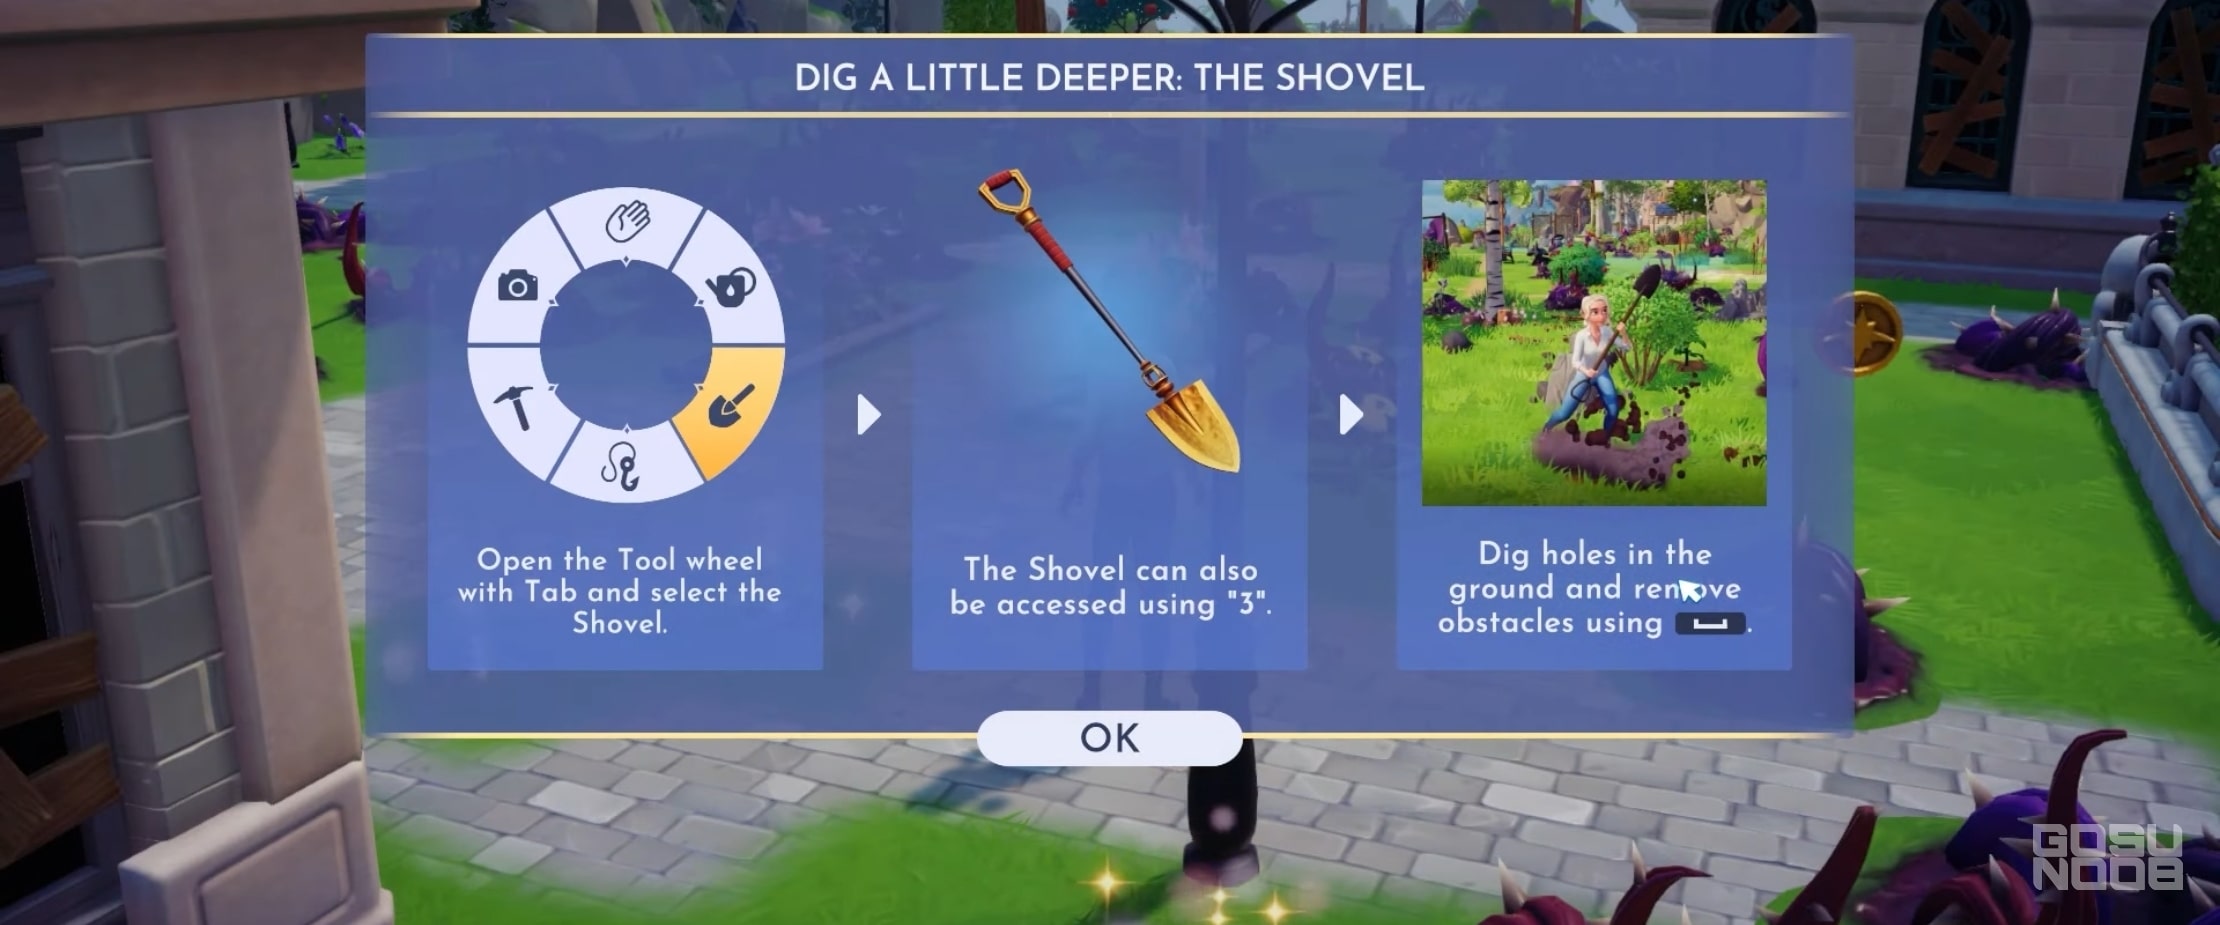 shovel for Hardwood farming in Disney Dreamlight Valley;